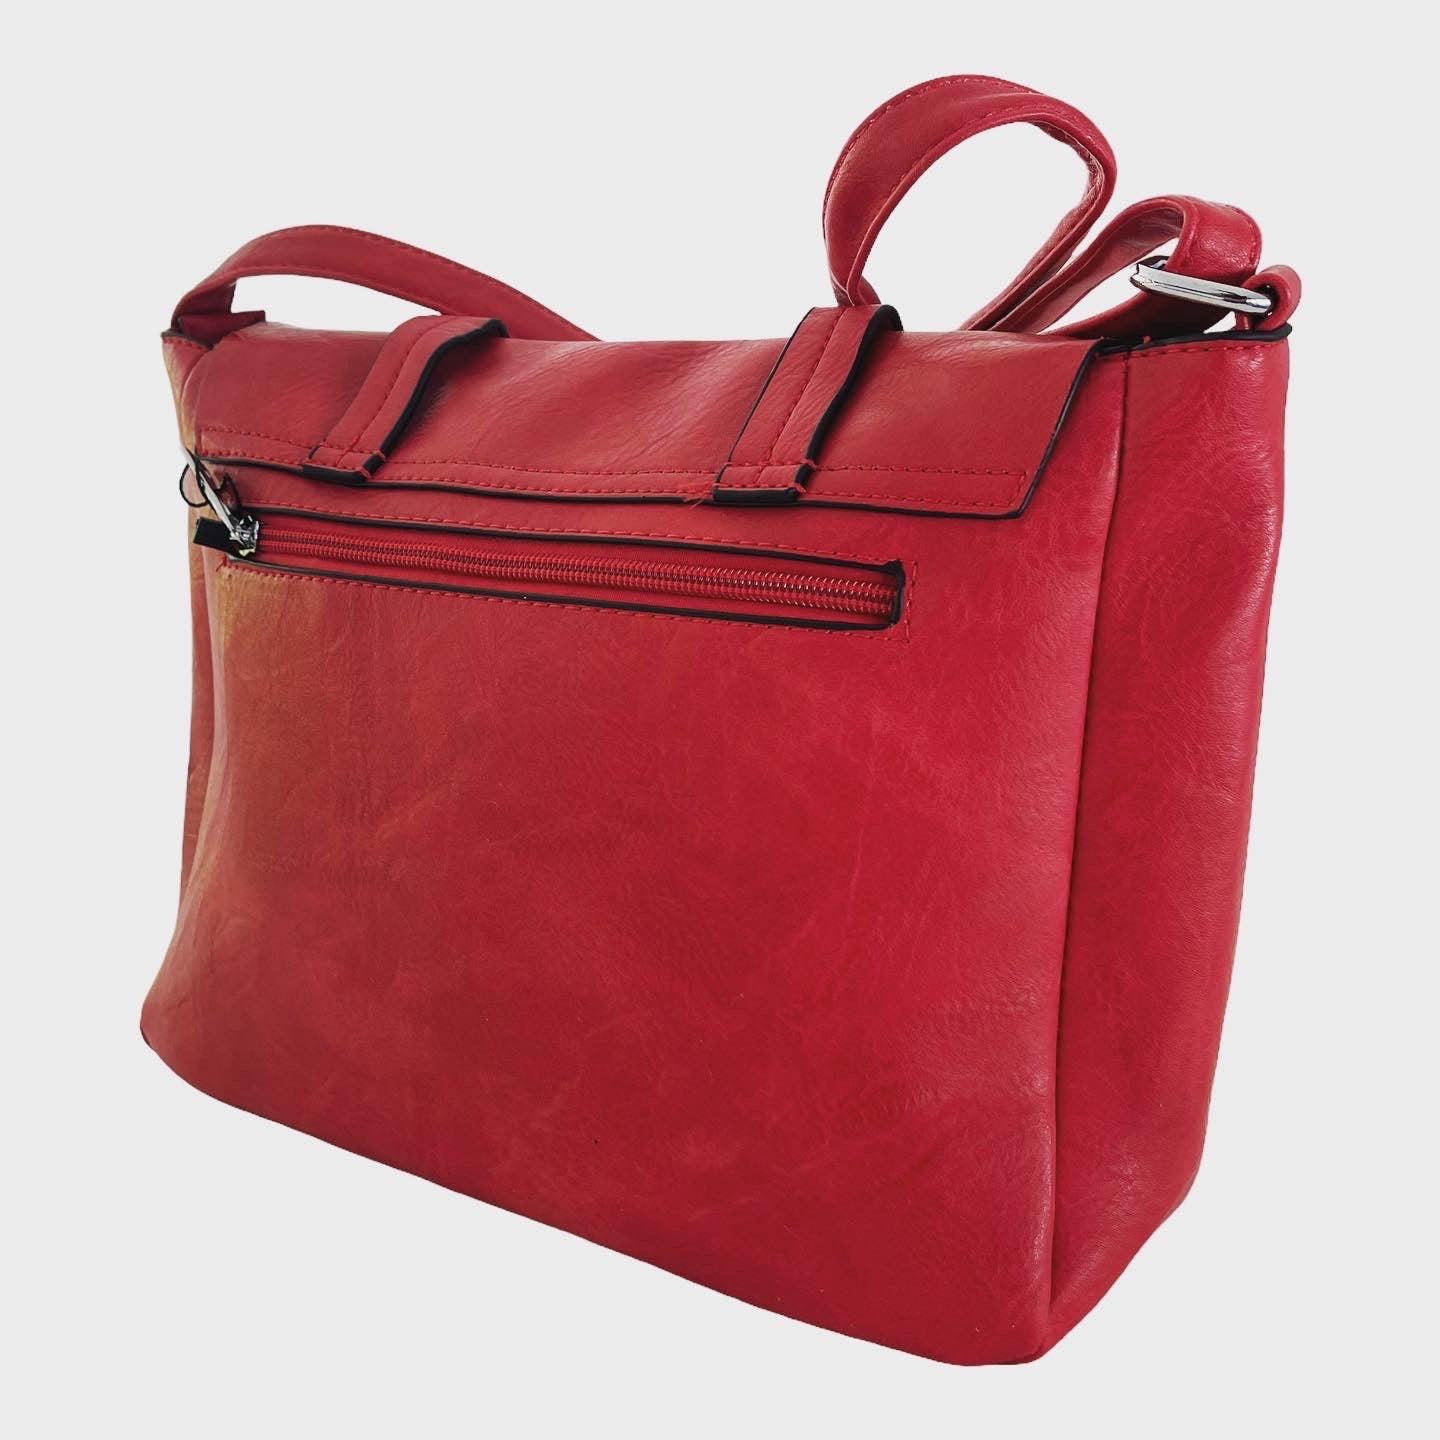 Rote Mädchentasche aus Kunstleder mit doppeltem Druckknopf und dreifachem Reißverschluss